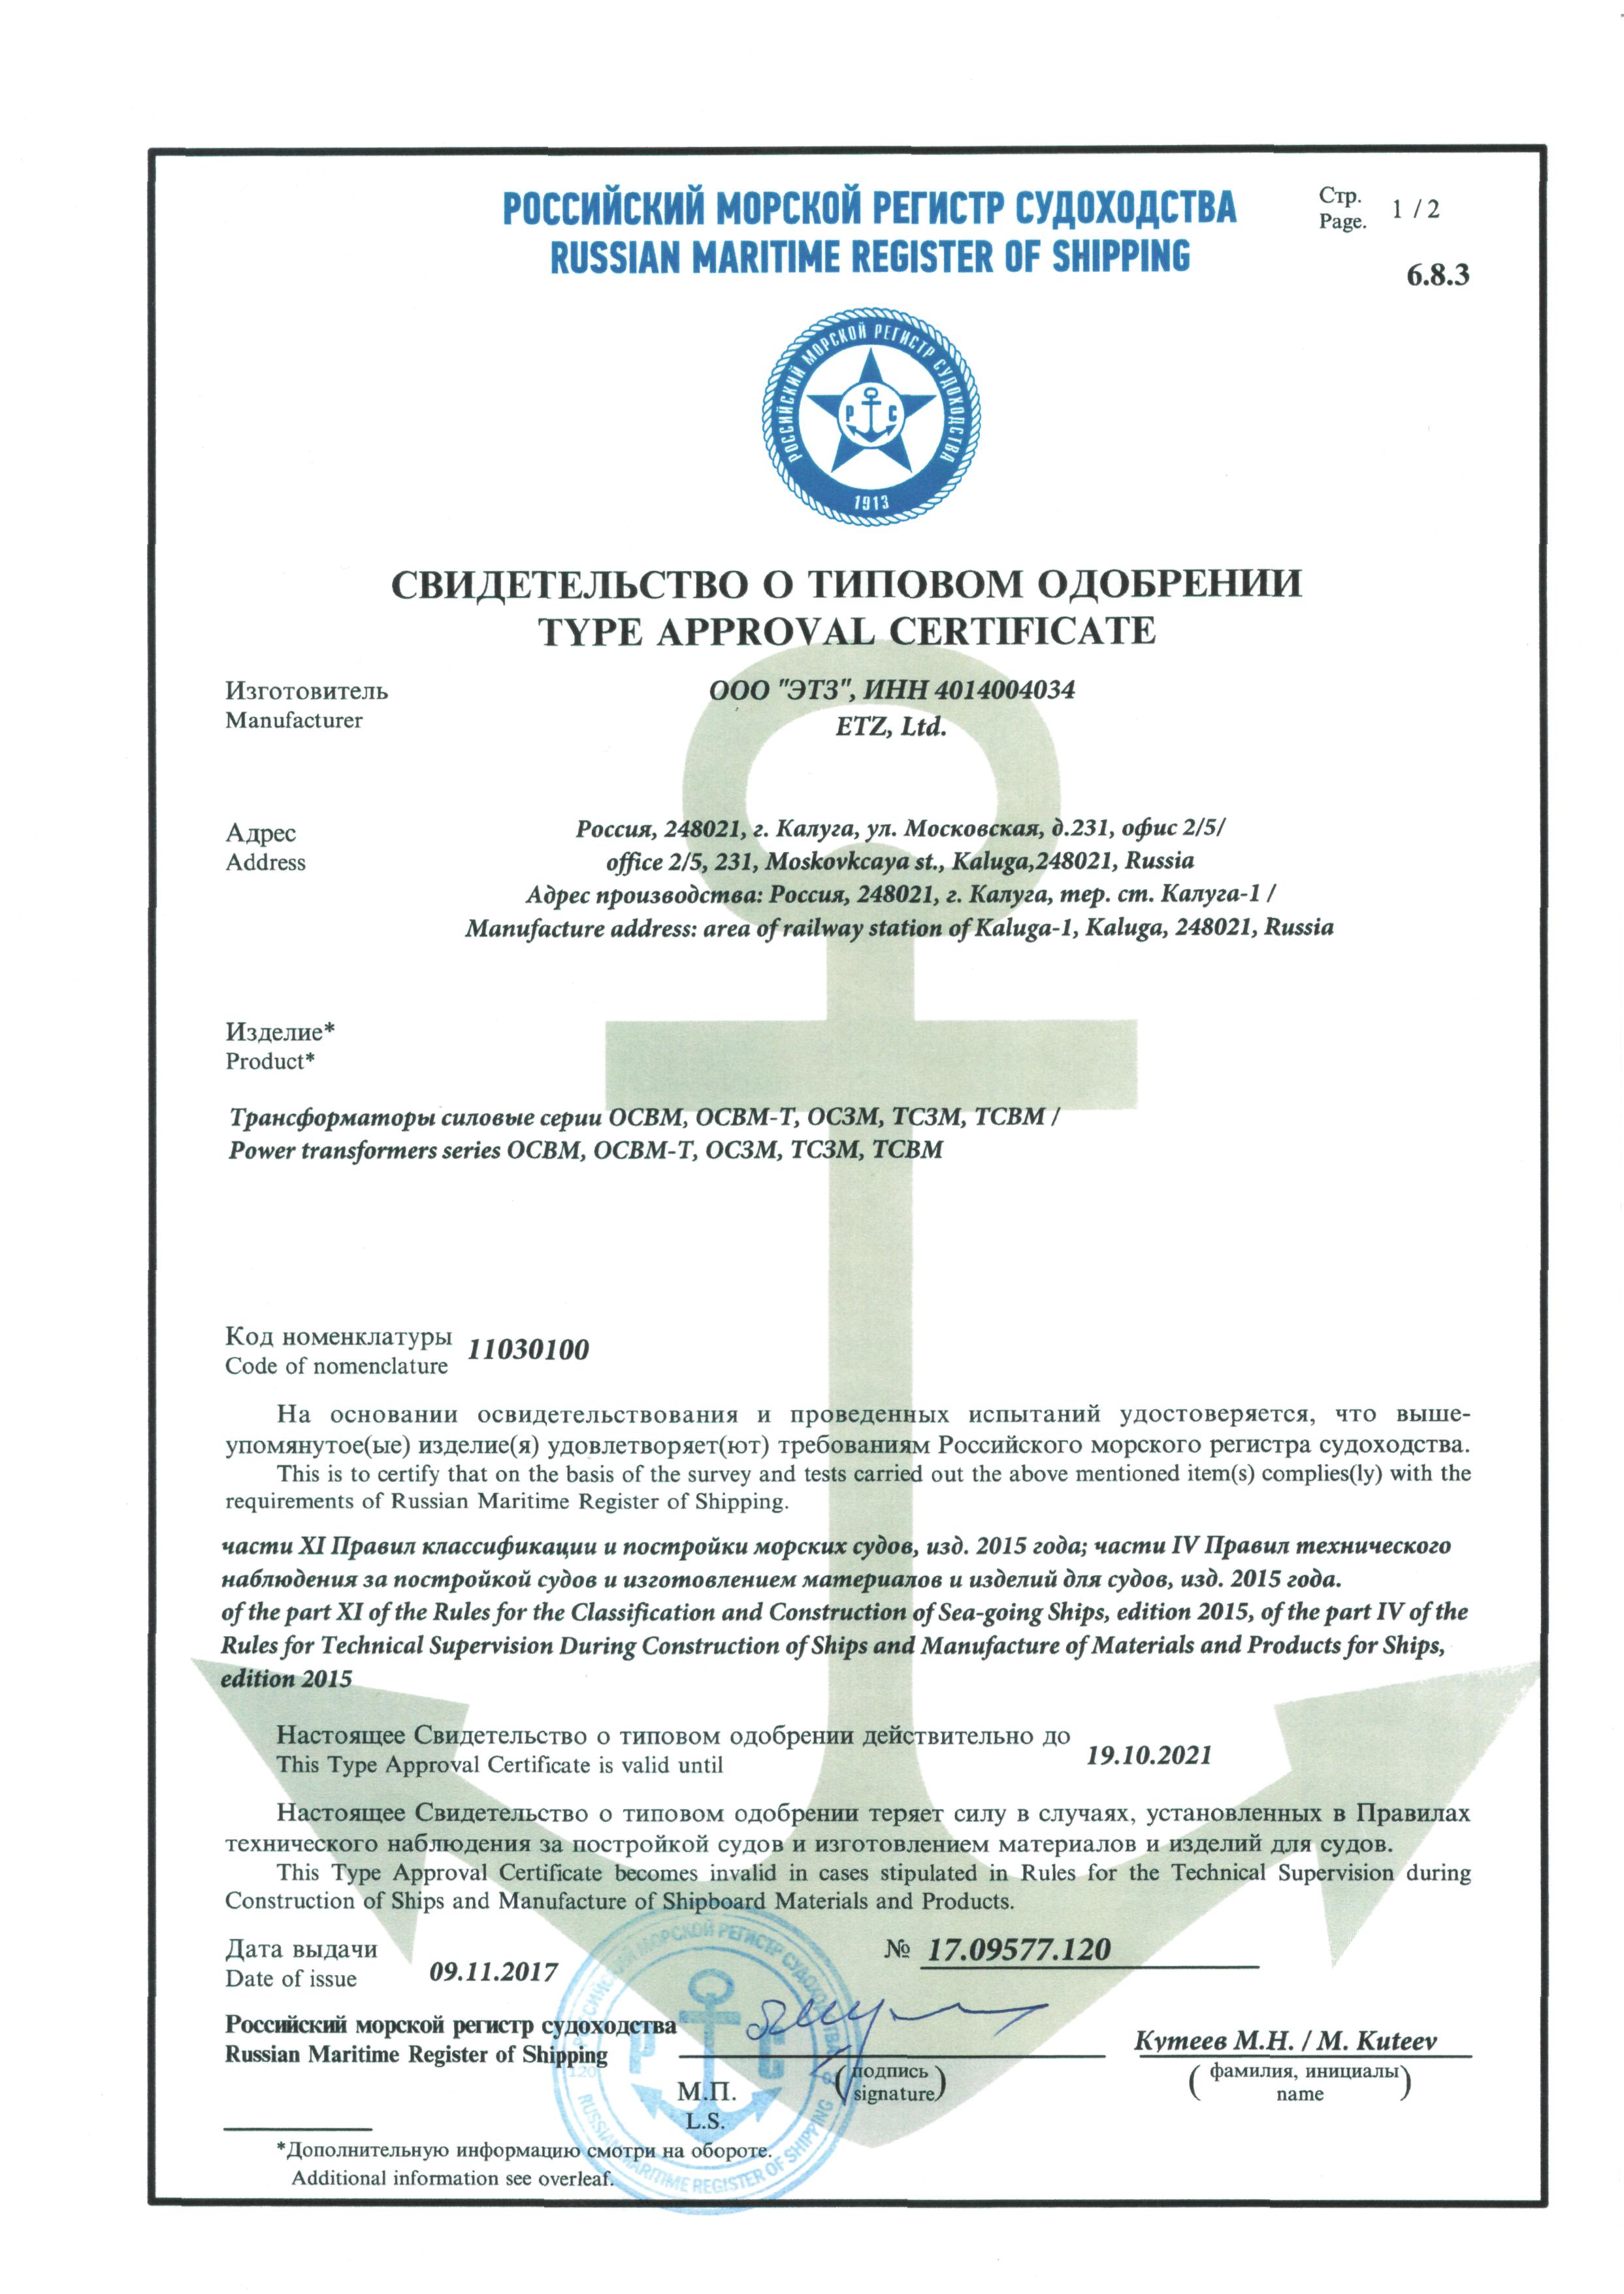 морской регистр судоходства, свидетельство о типовом одобрении №17.09577.120